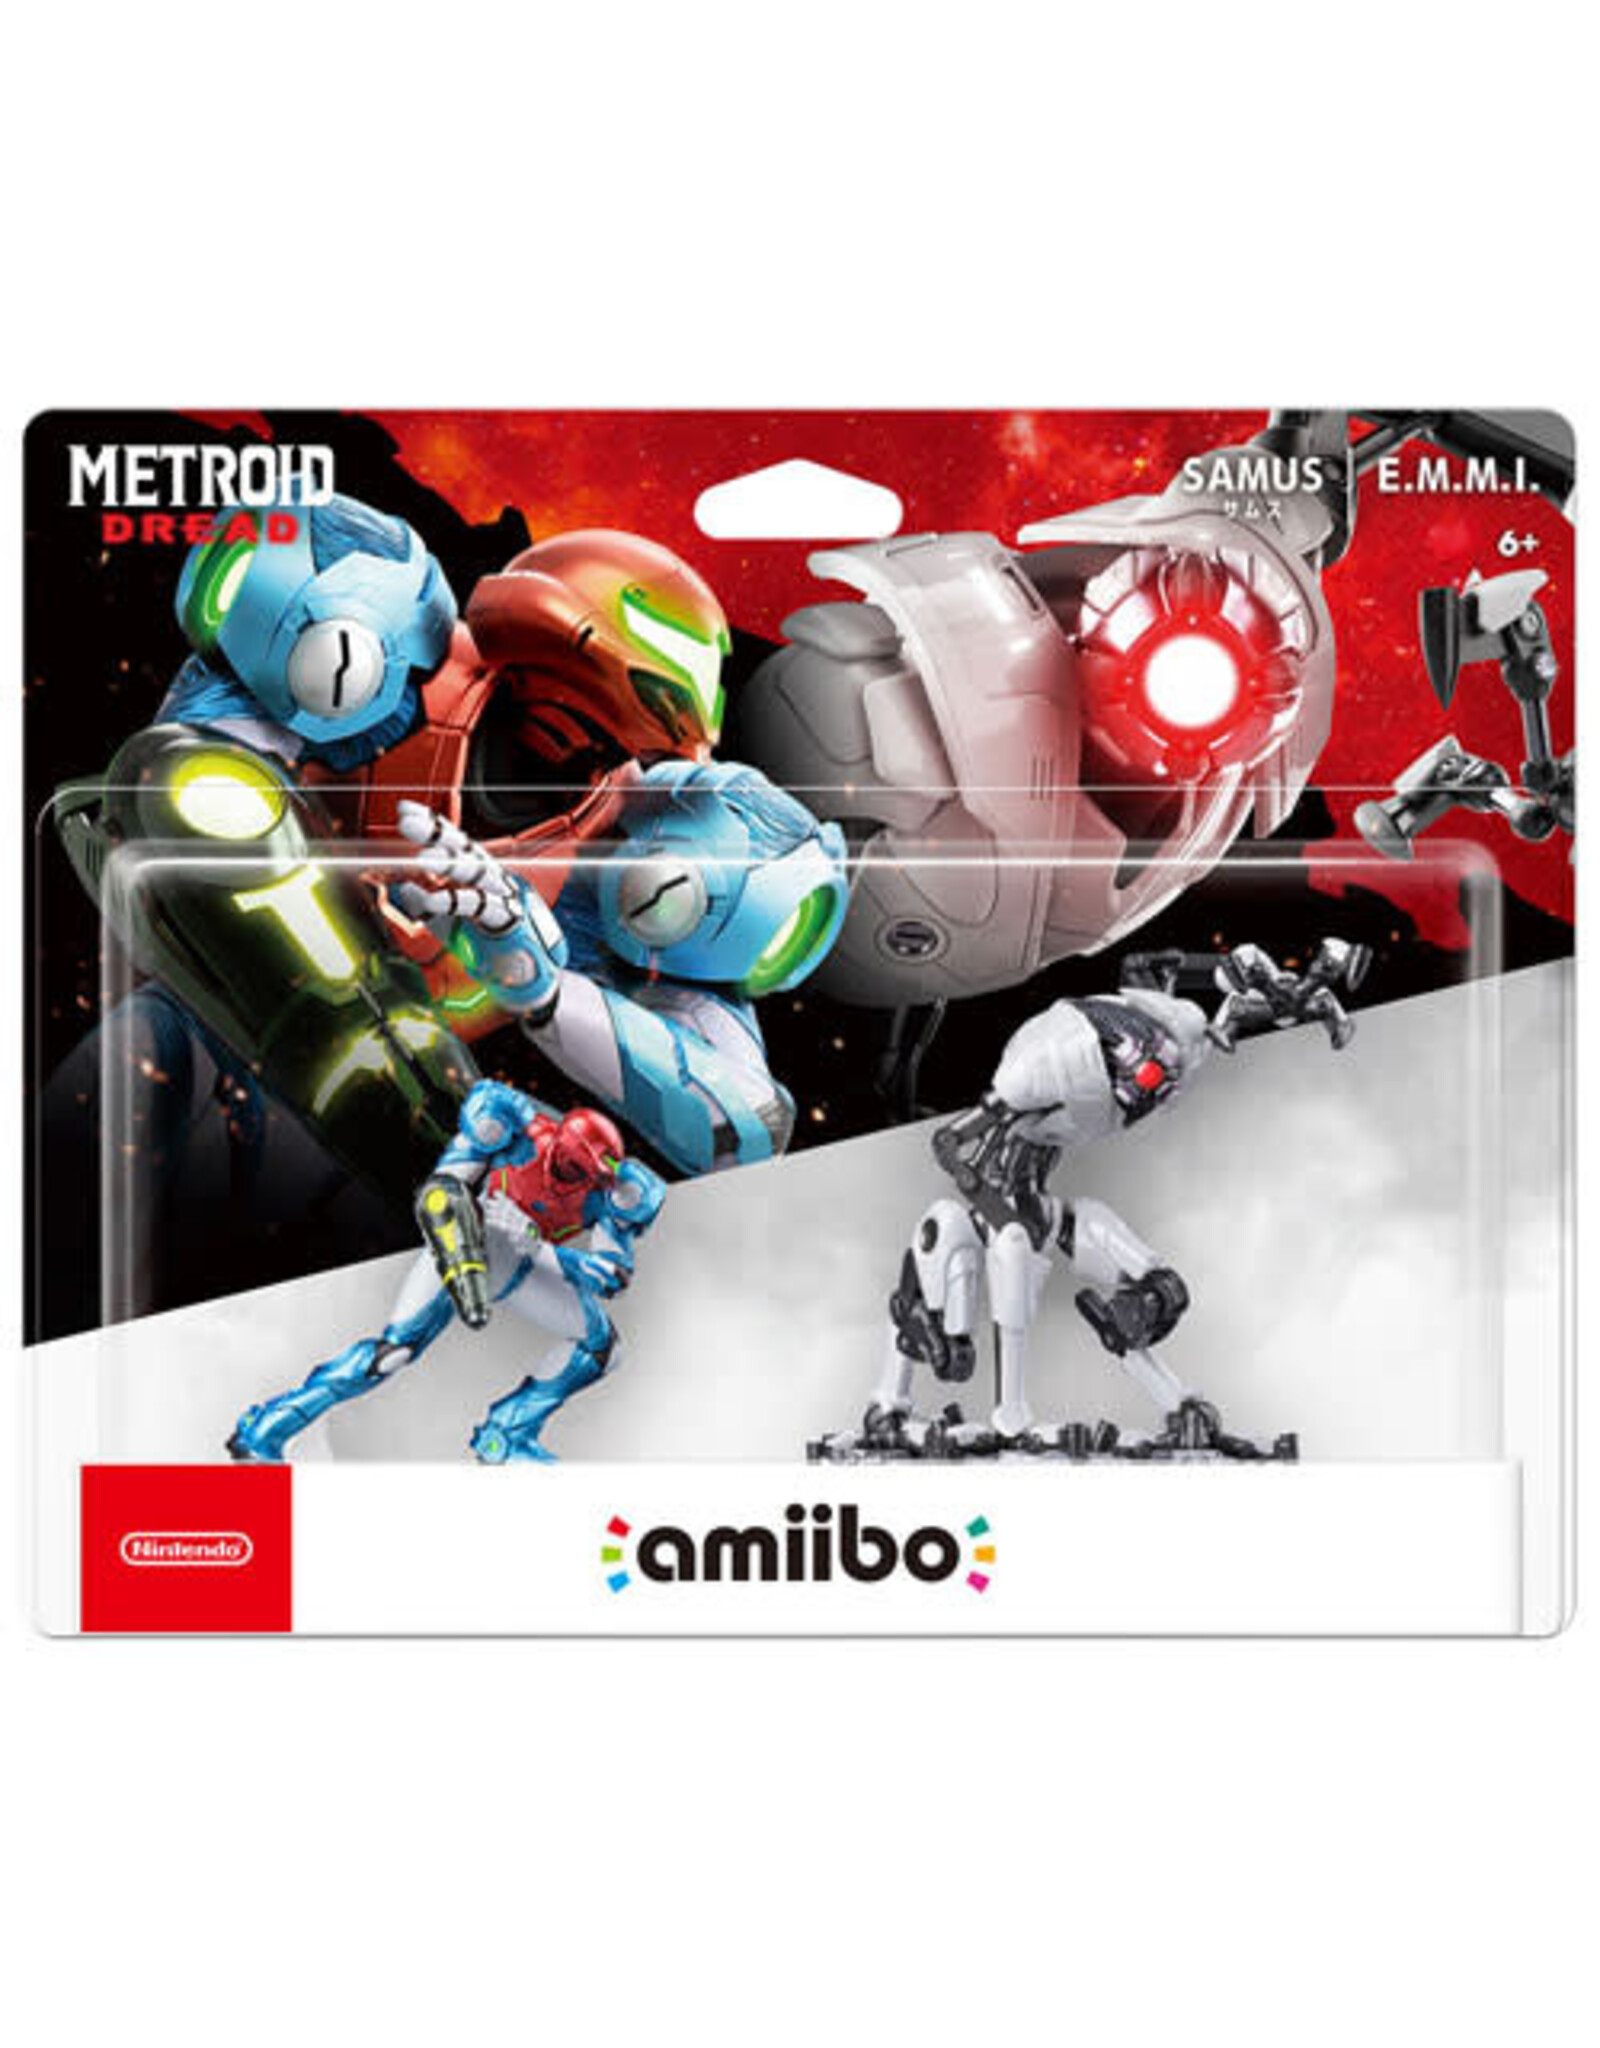 Amiibo Samus and E.M.M.I. Amiibo 2 Pack (Metroid Dread)